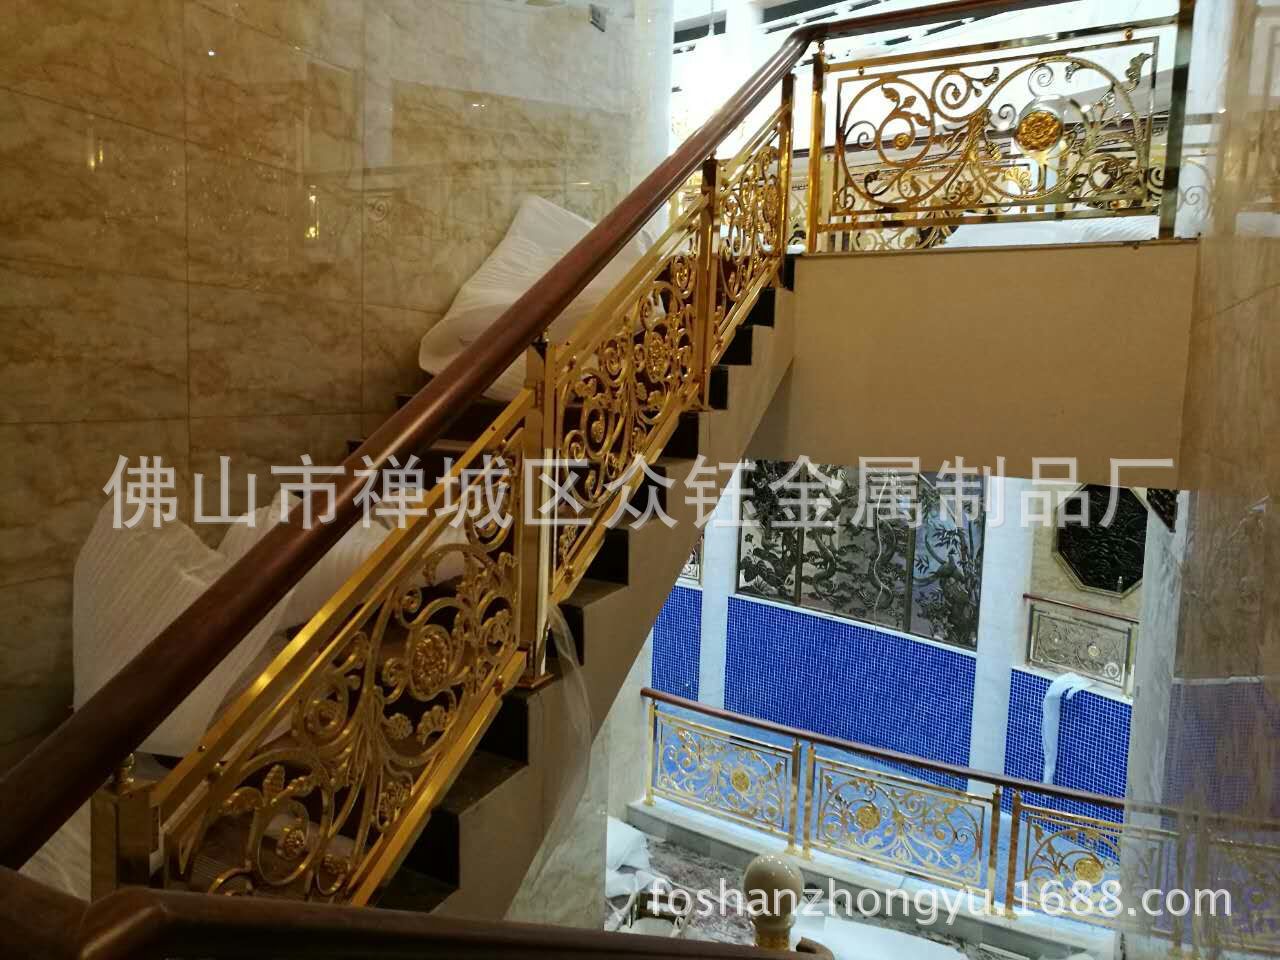 厂家直销 别墅高端铜艺雕刻楼梯护栏细节诠释奢华示例图8